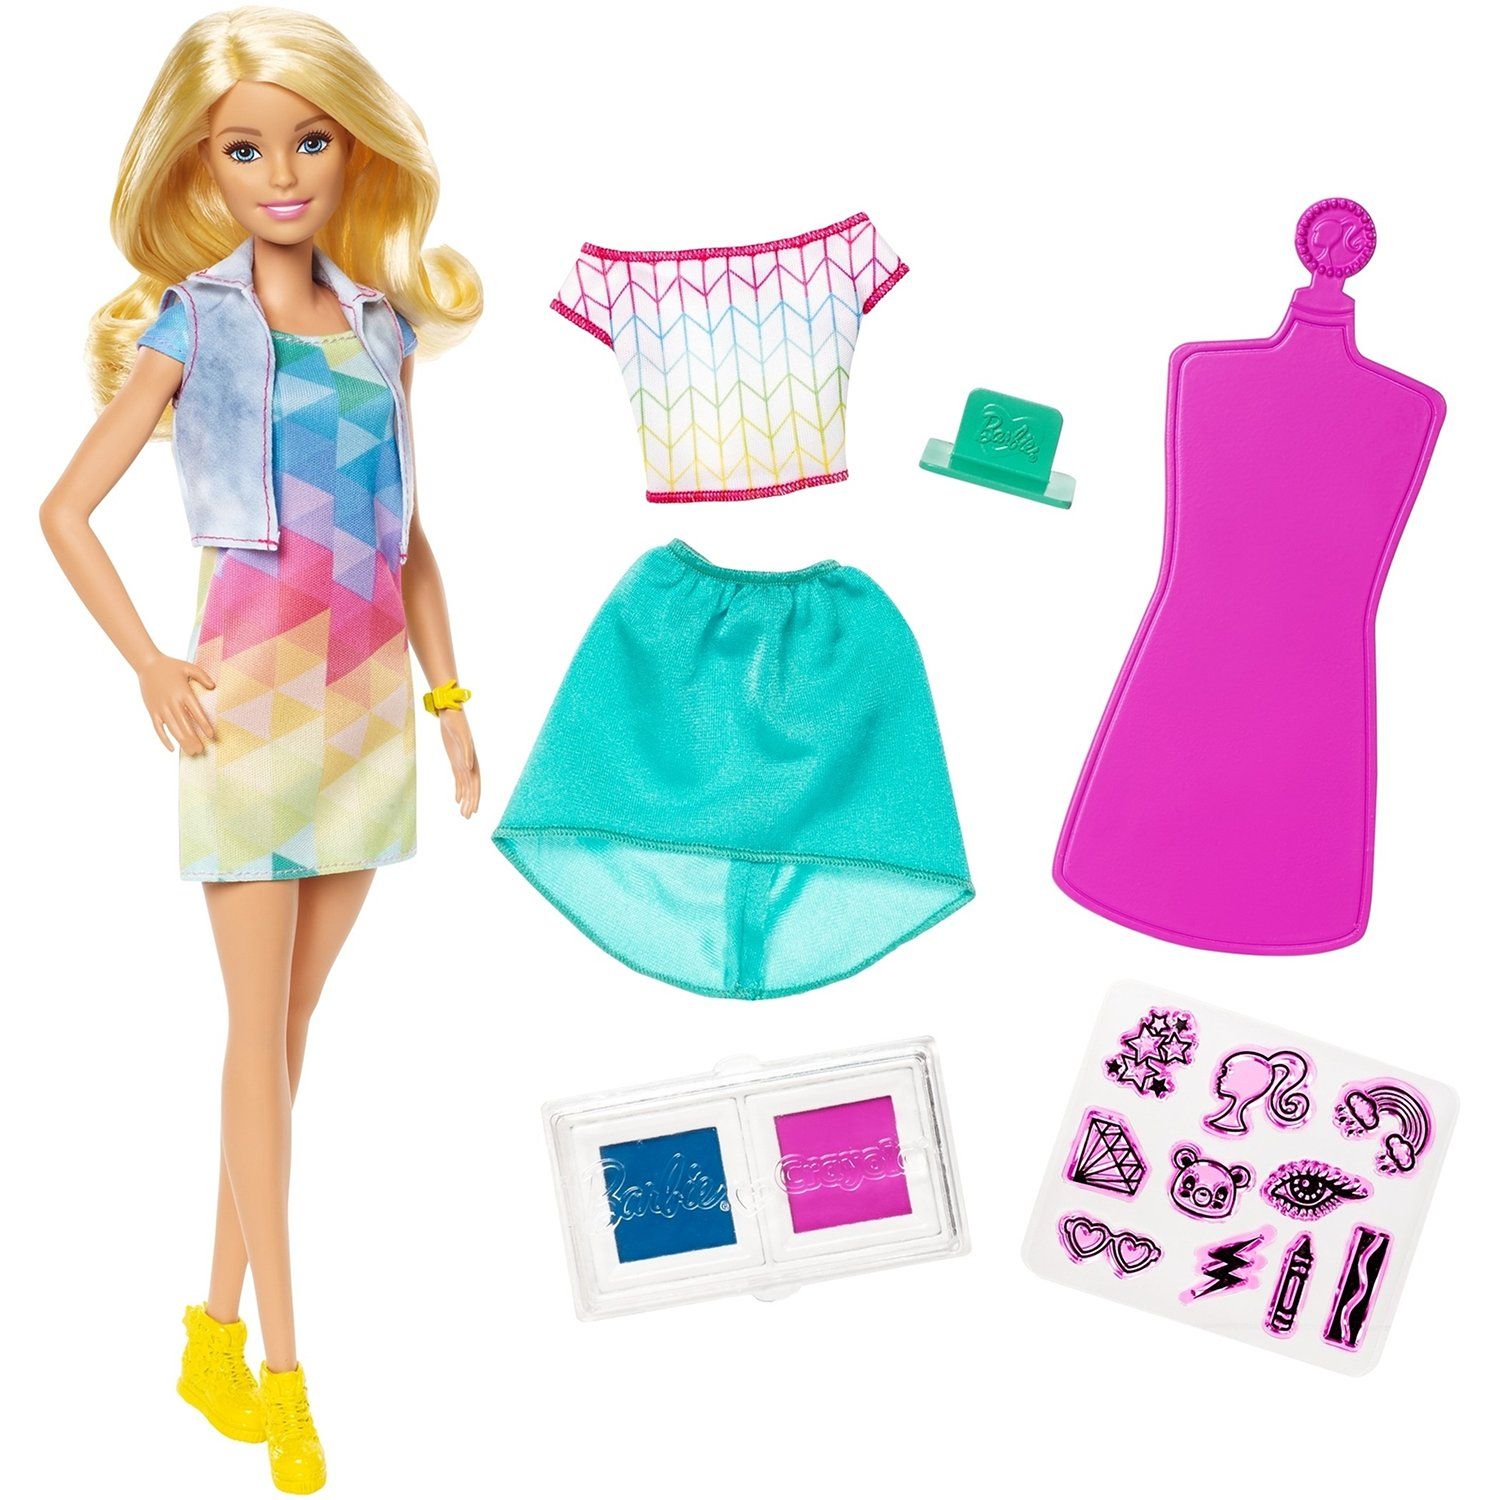 Игрушка барби купить. Кукла Barbie "Crayola модные Наряды". Кукла Барби Крайола цветной сюрприз. Кукла Маттель Барби. Куклы Барби Маттел Барби одежда.